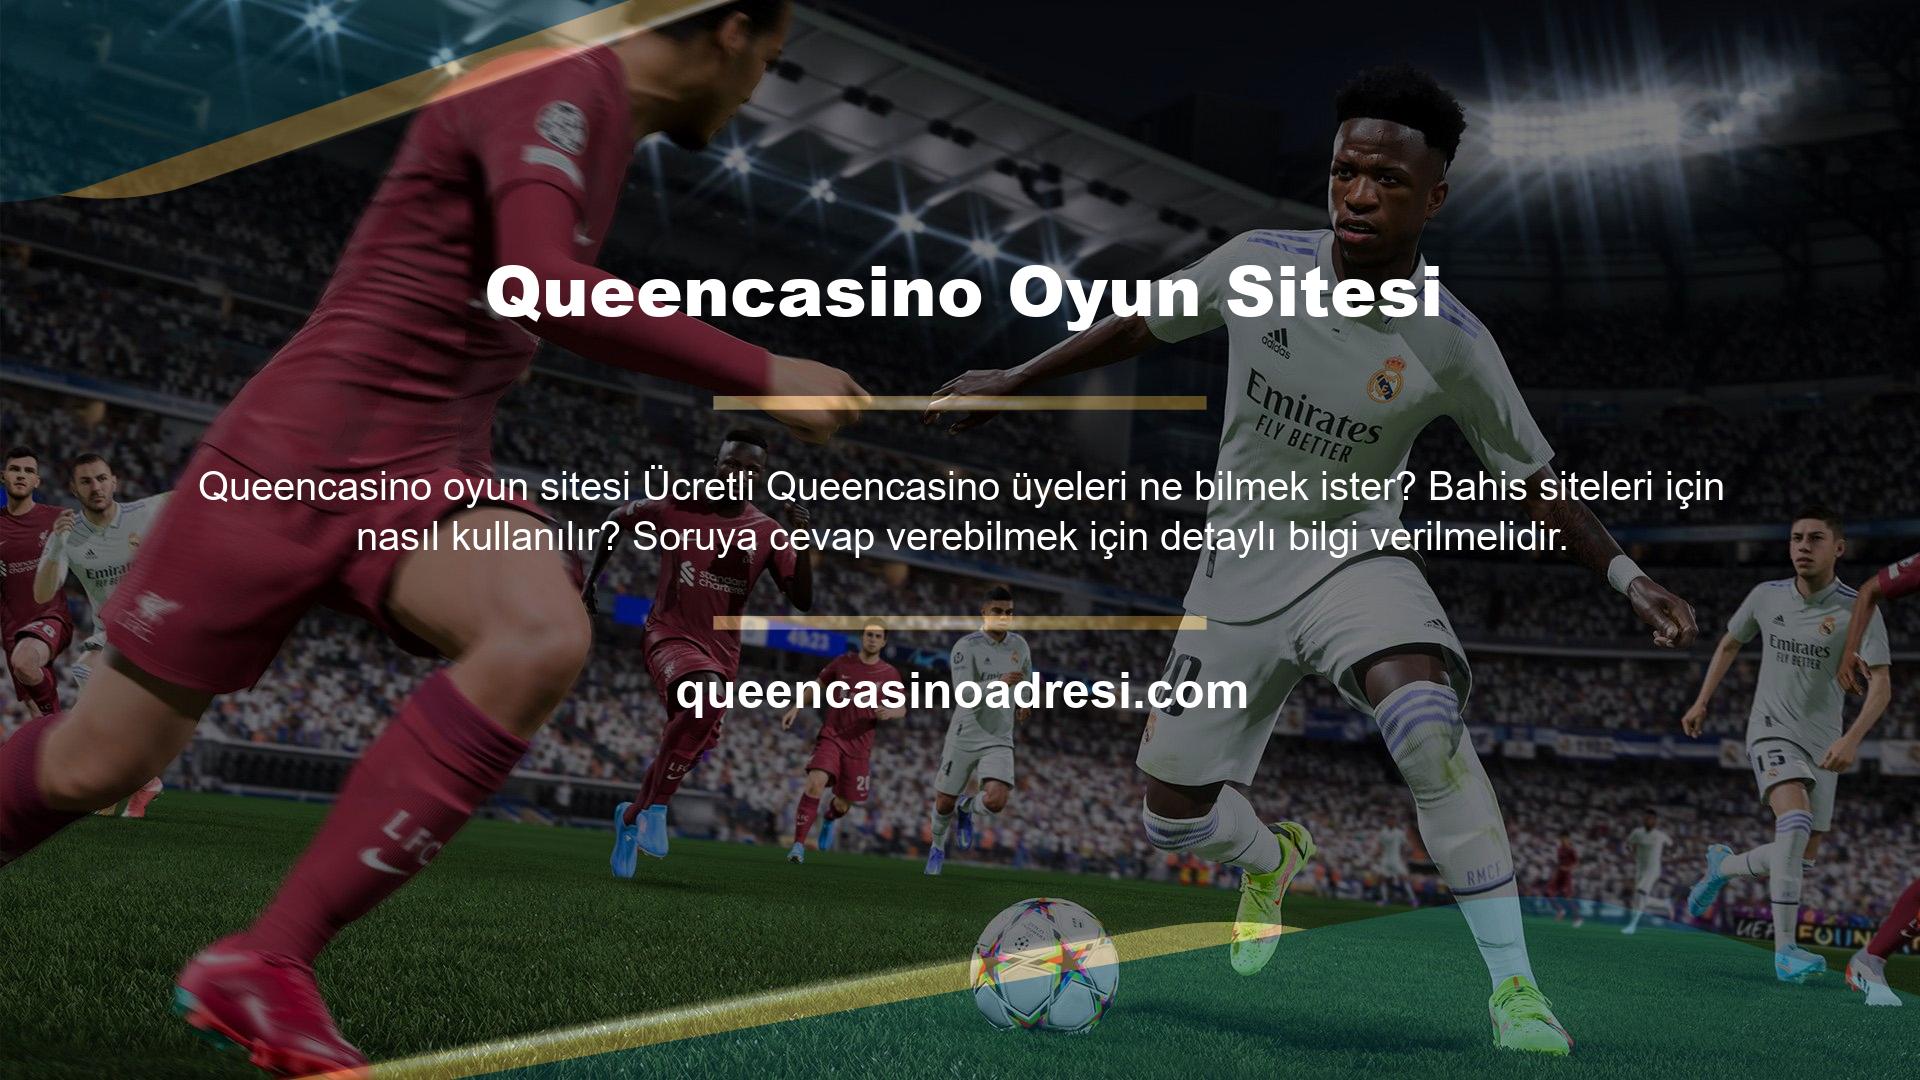 Queencasino Oyun Sitesi